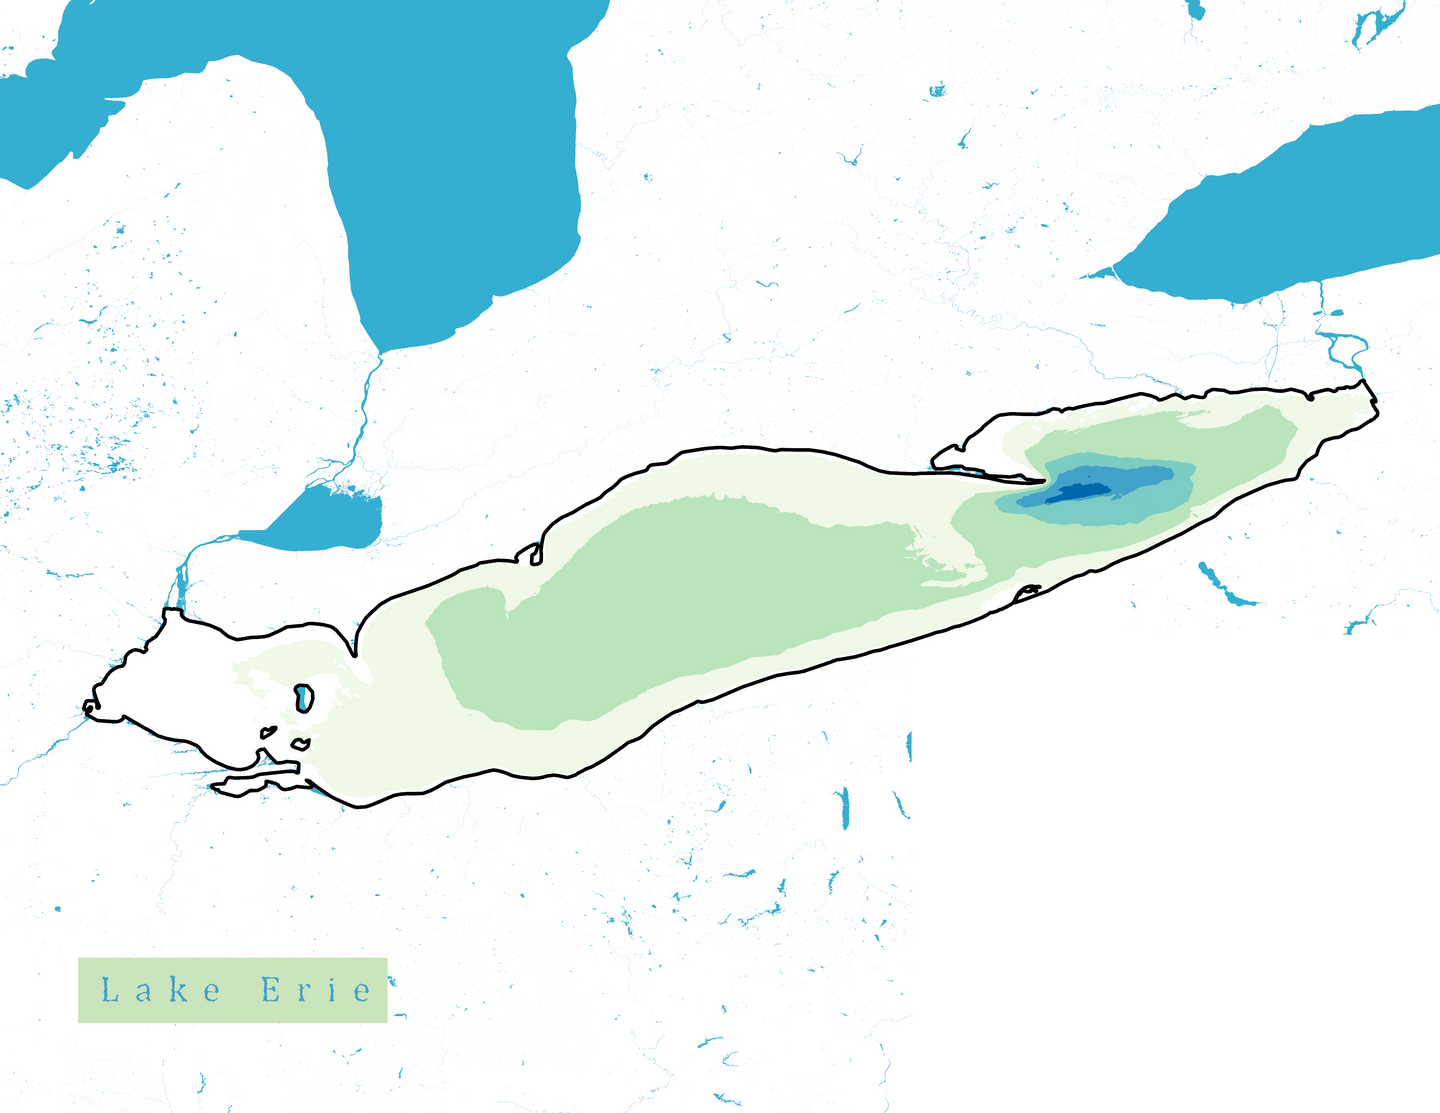 Lake Erie Map Print - Bathymetry Map